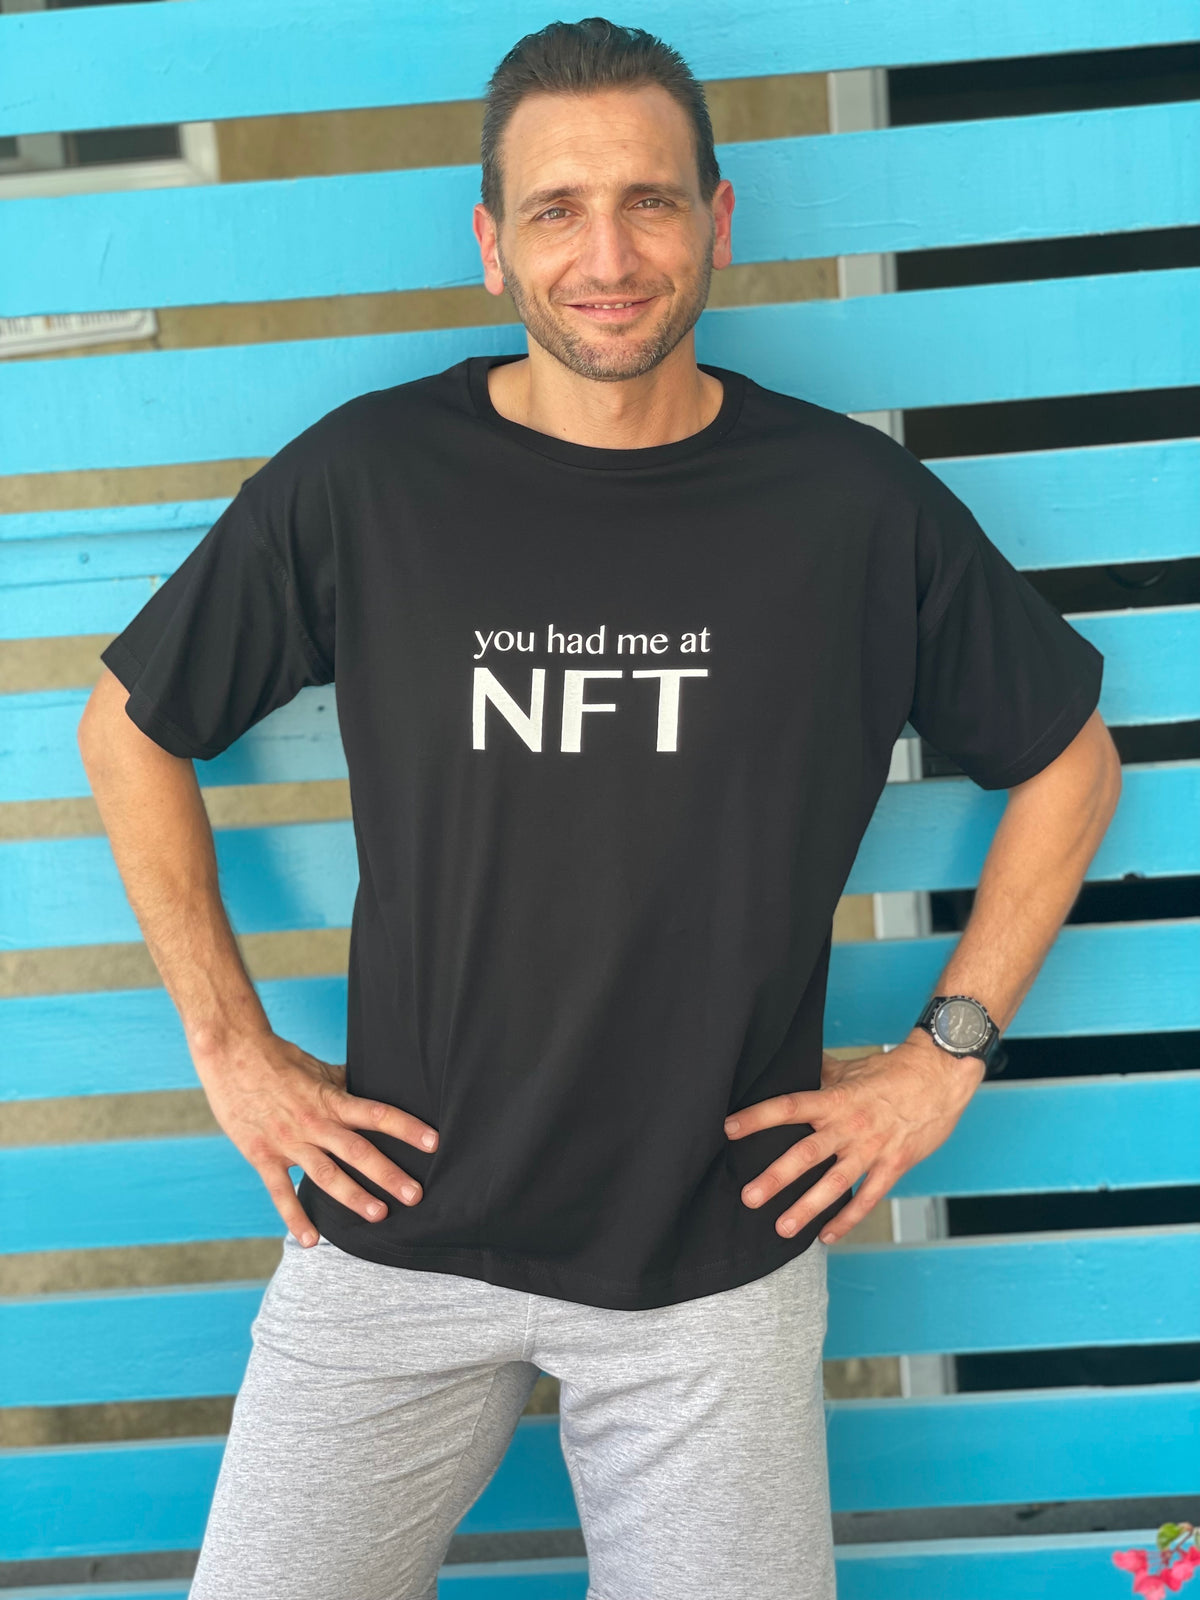 The NFT T-Shirt